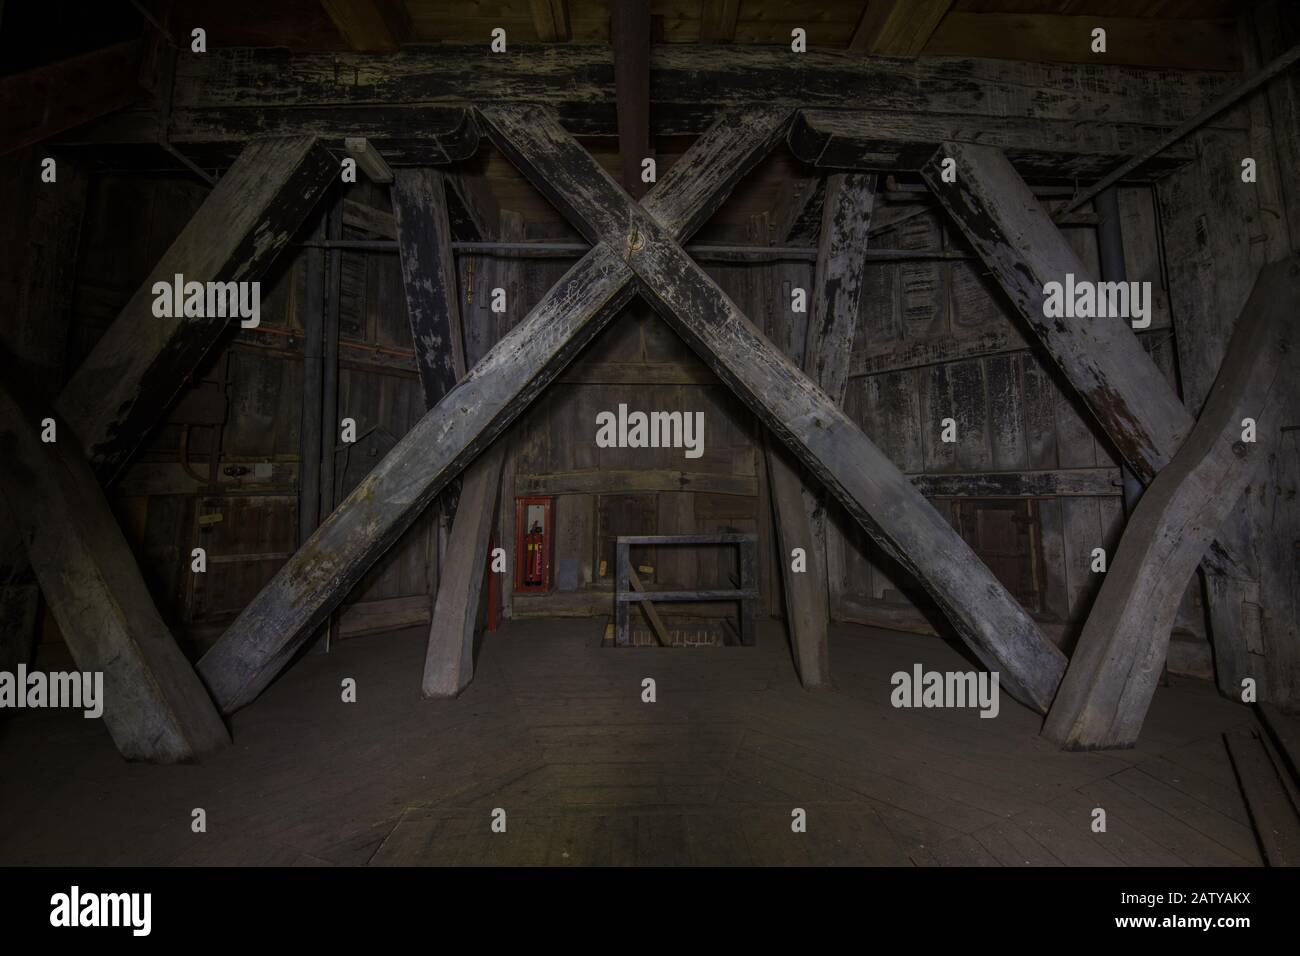 Historischer Architekturhintergrund eines Kirchturms in Europa. Bild mit niedriger Tonart bei Nacht in Dunkelheit. Groningen, Niederlande. Stockfoto